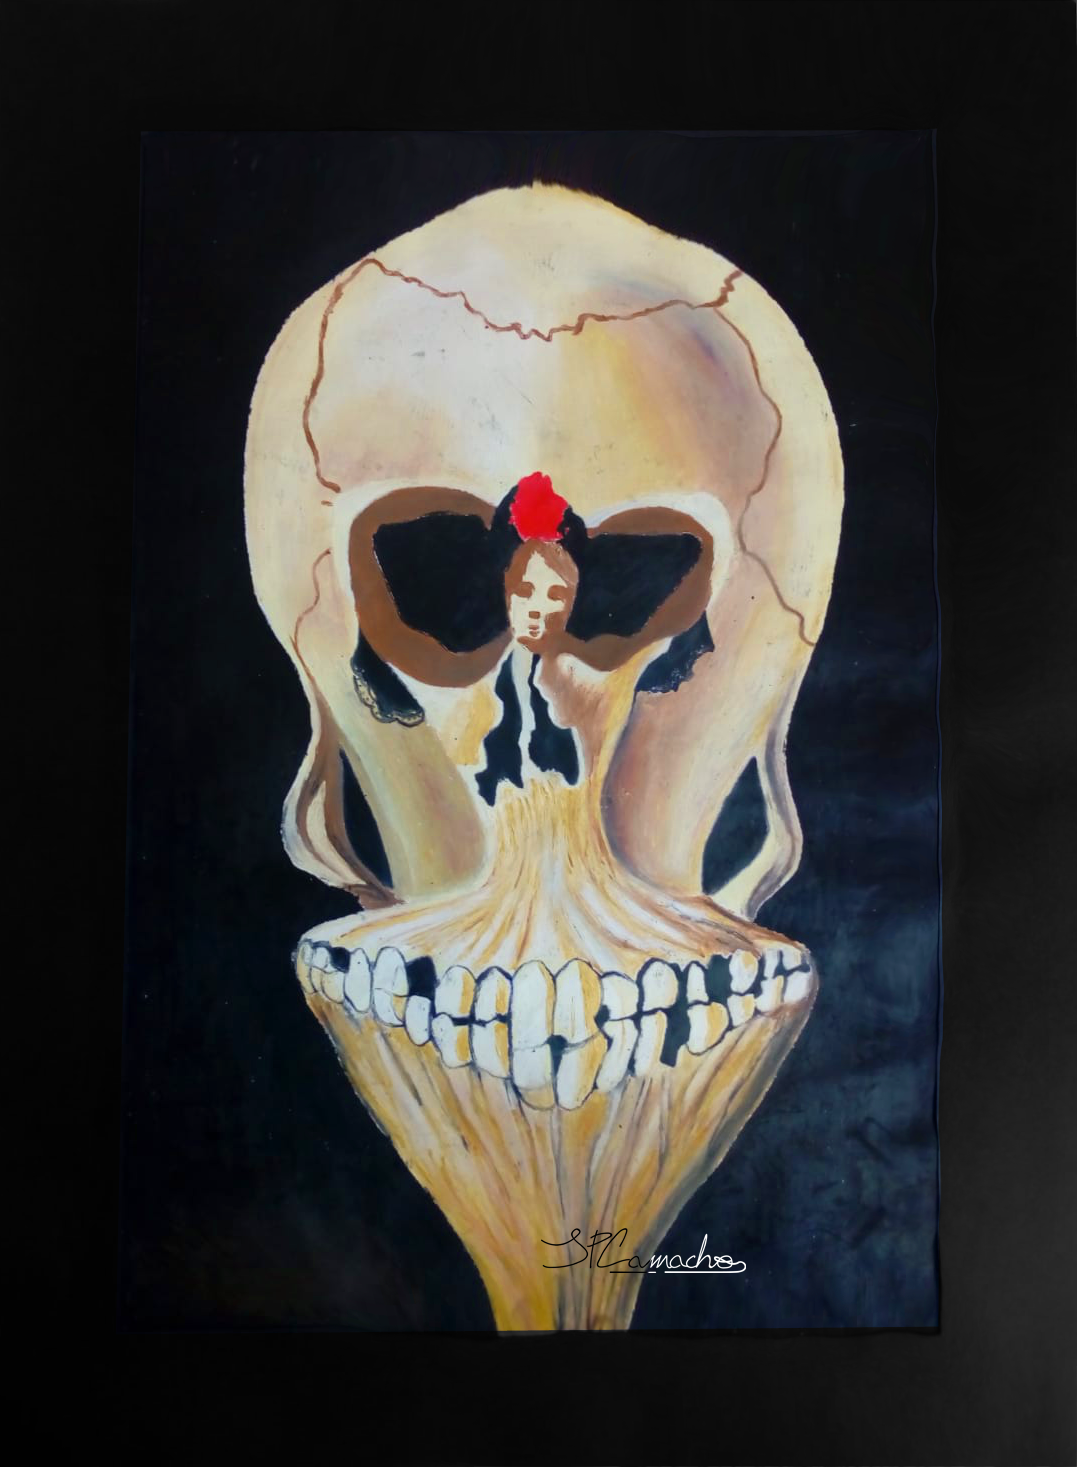 Dancer in a skull